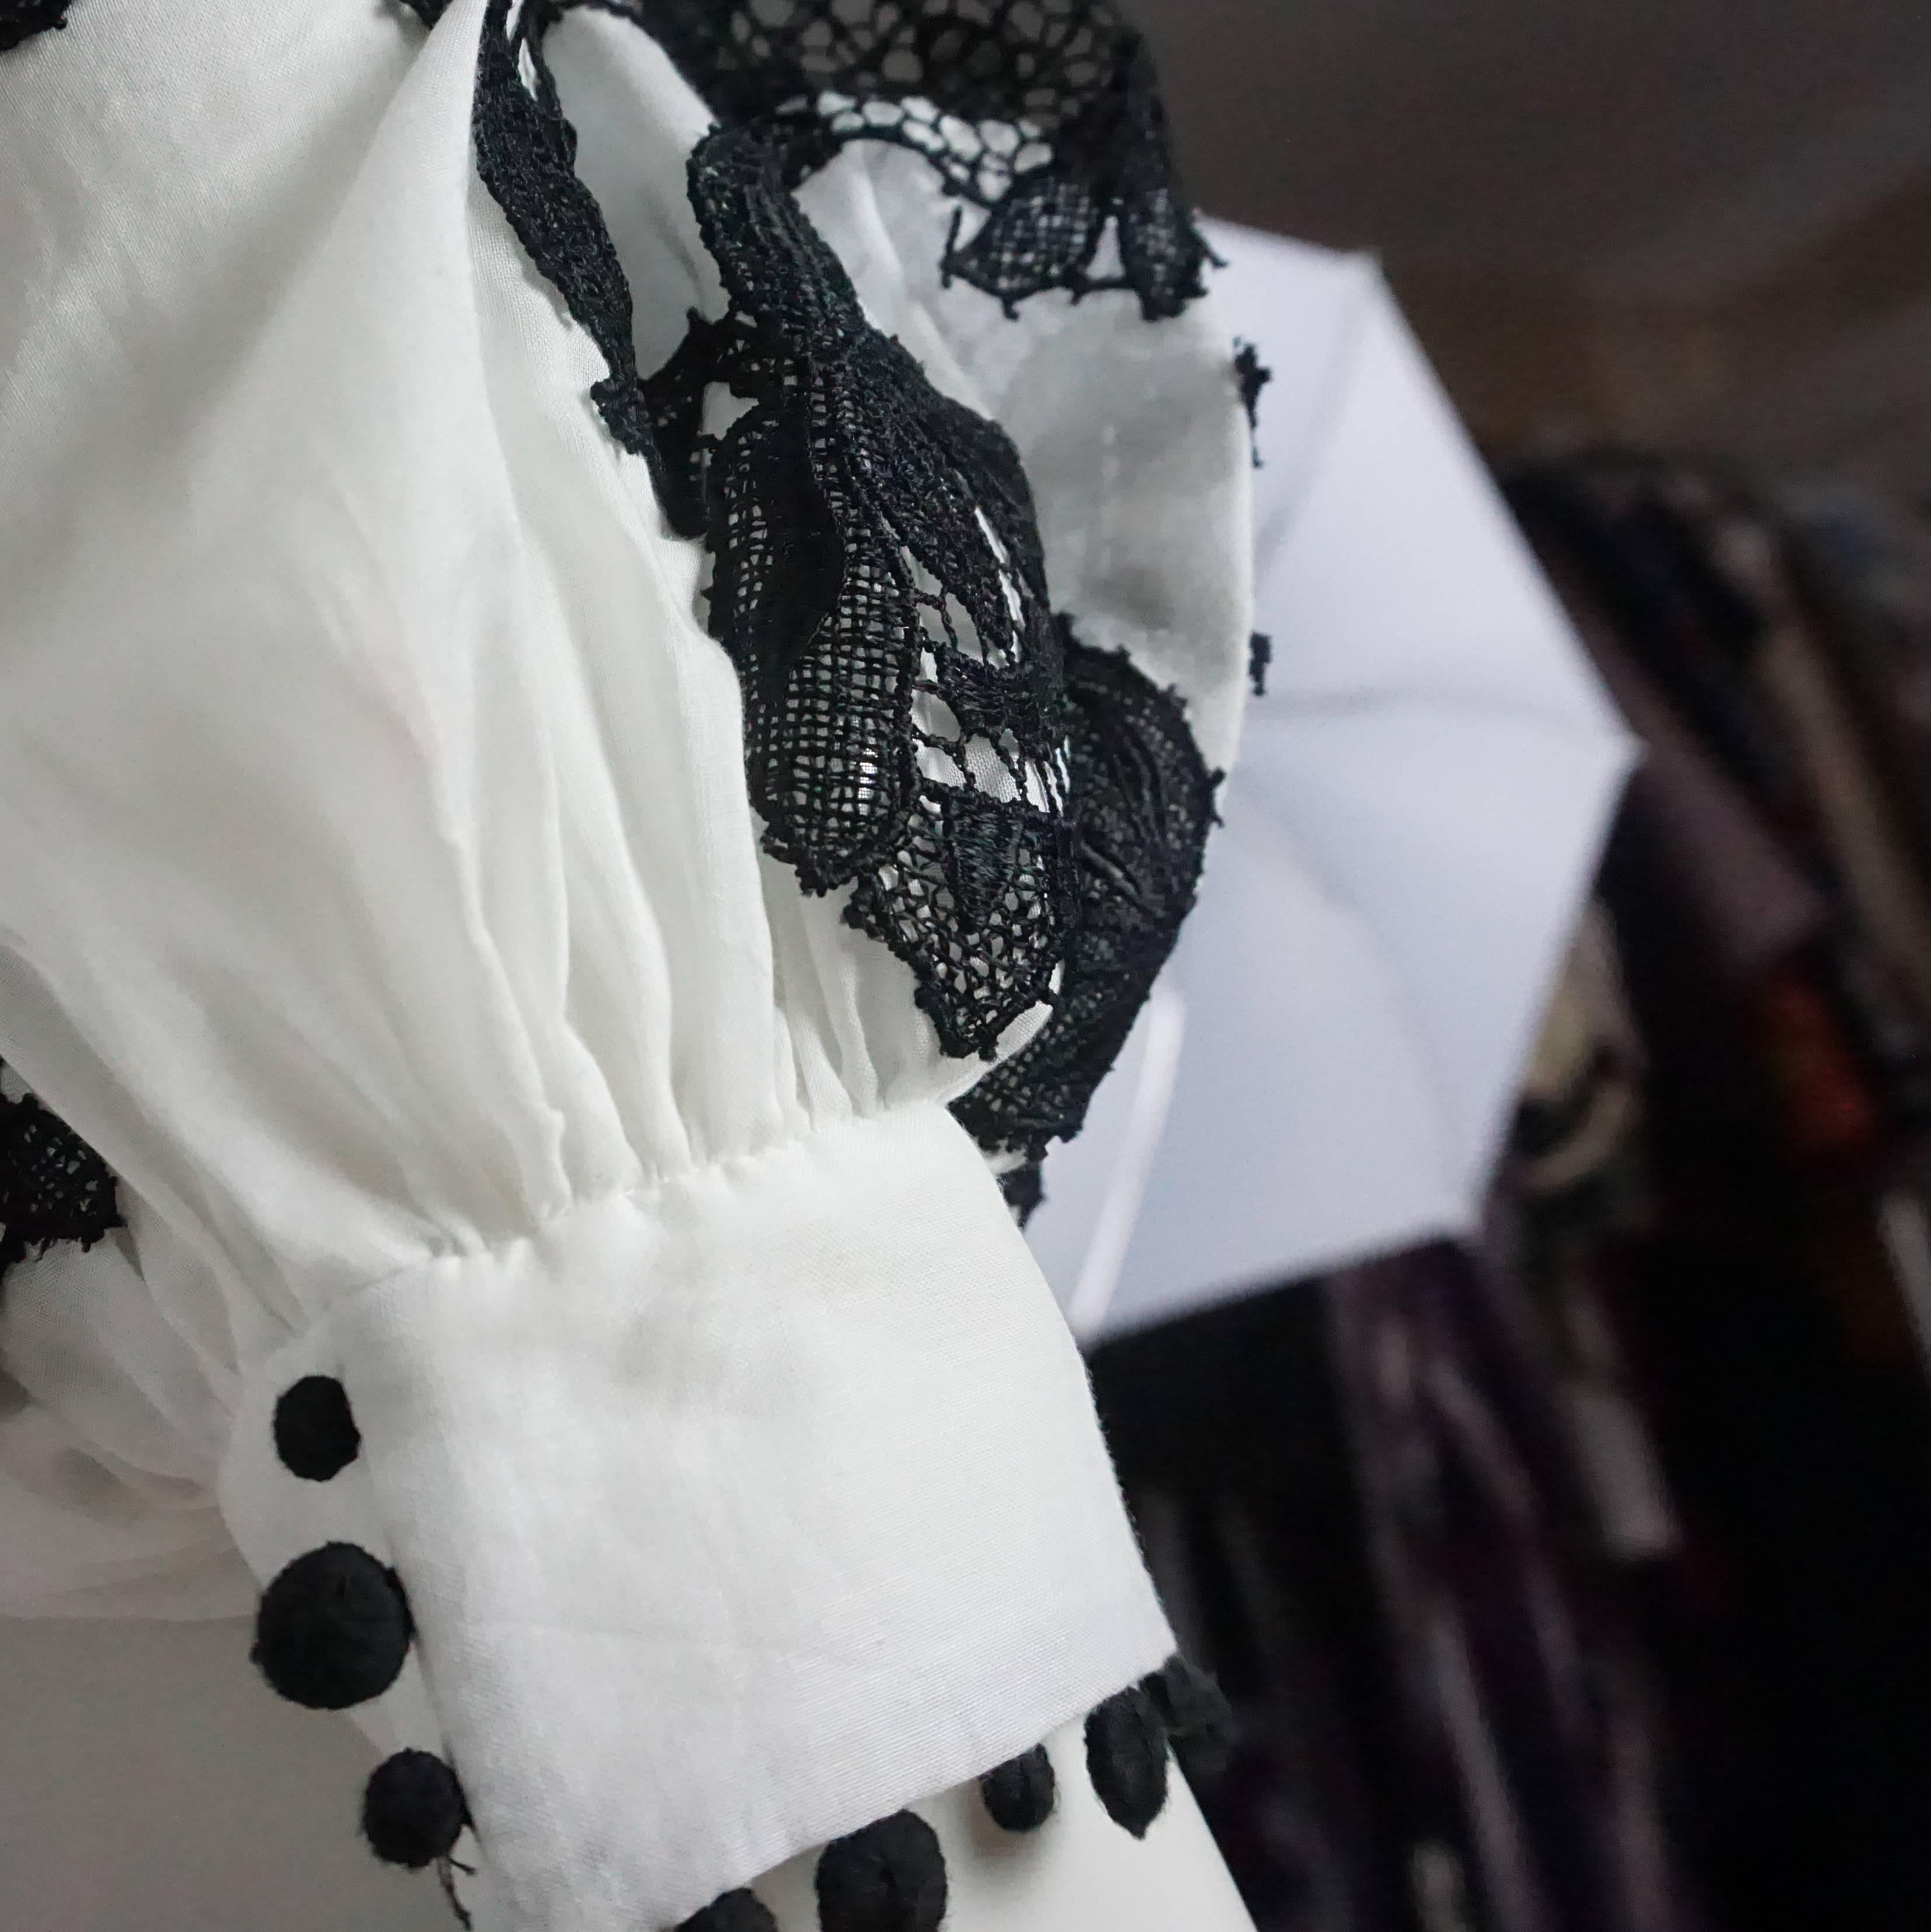 Oscar de la Renta White Cotton Peasant Top with Black Lace Detail - 2 3